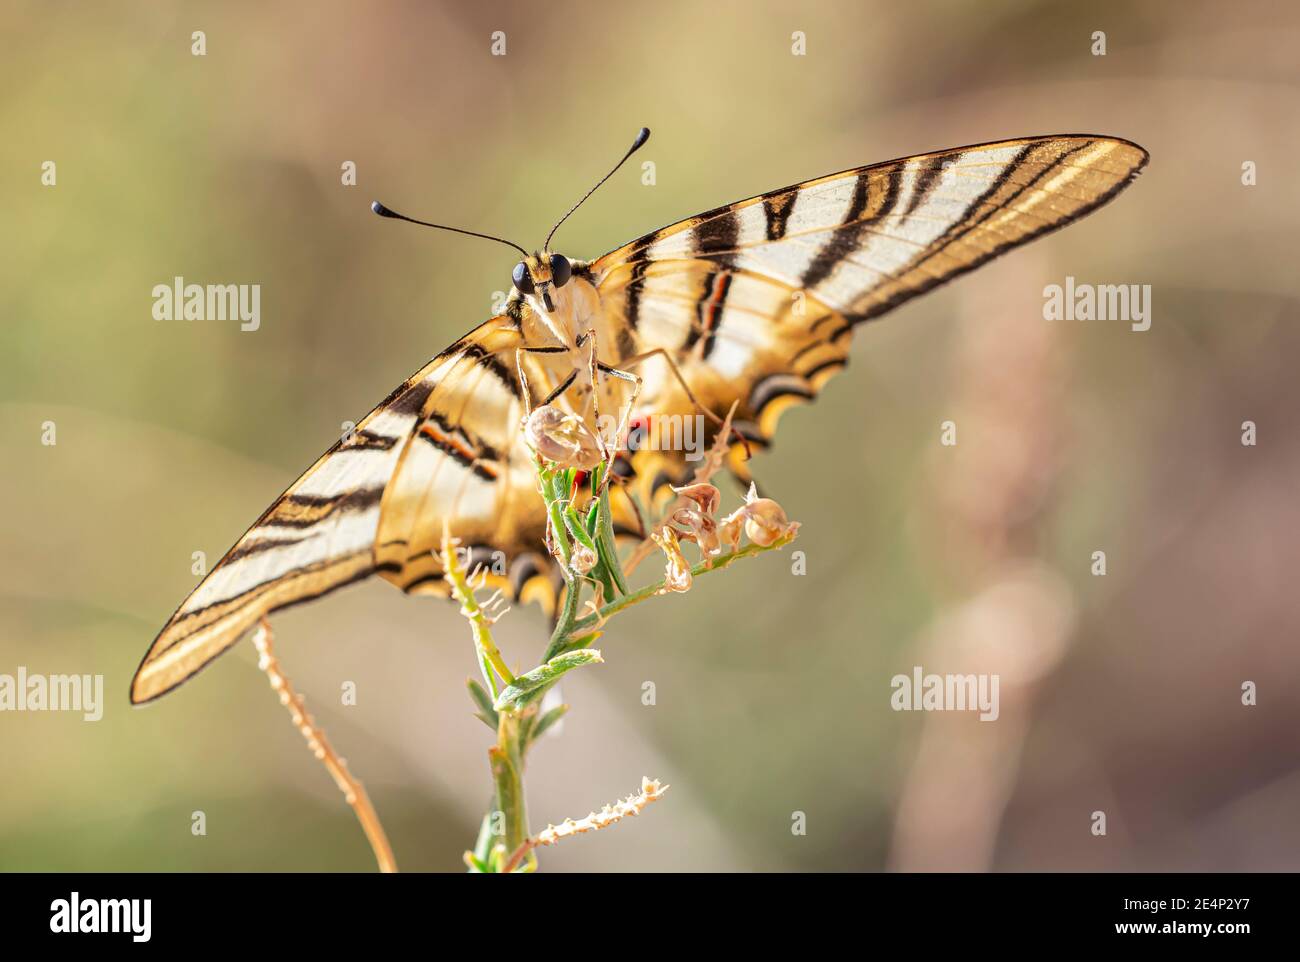 Mariposa aislada marrón y blanca posada en una planta mostrando las alas sobre un fondo desenfocado Stock Photo